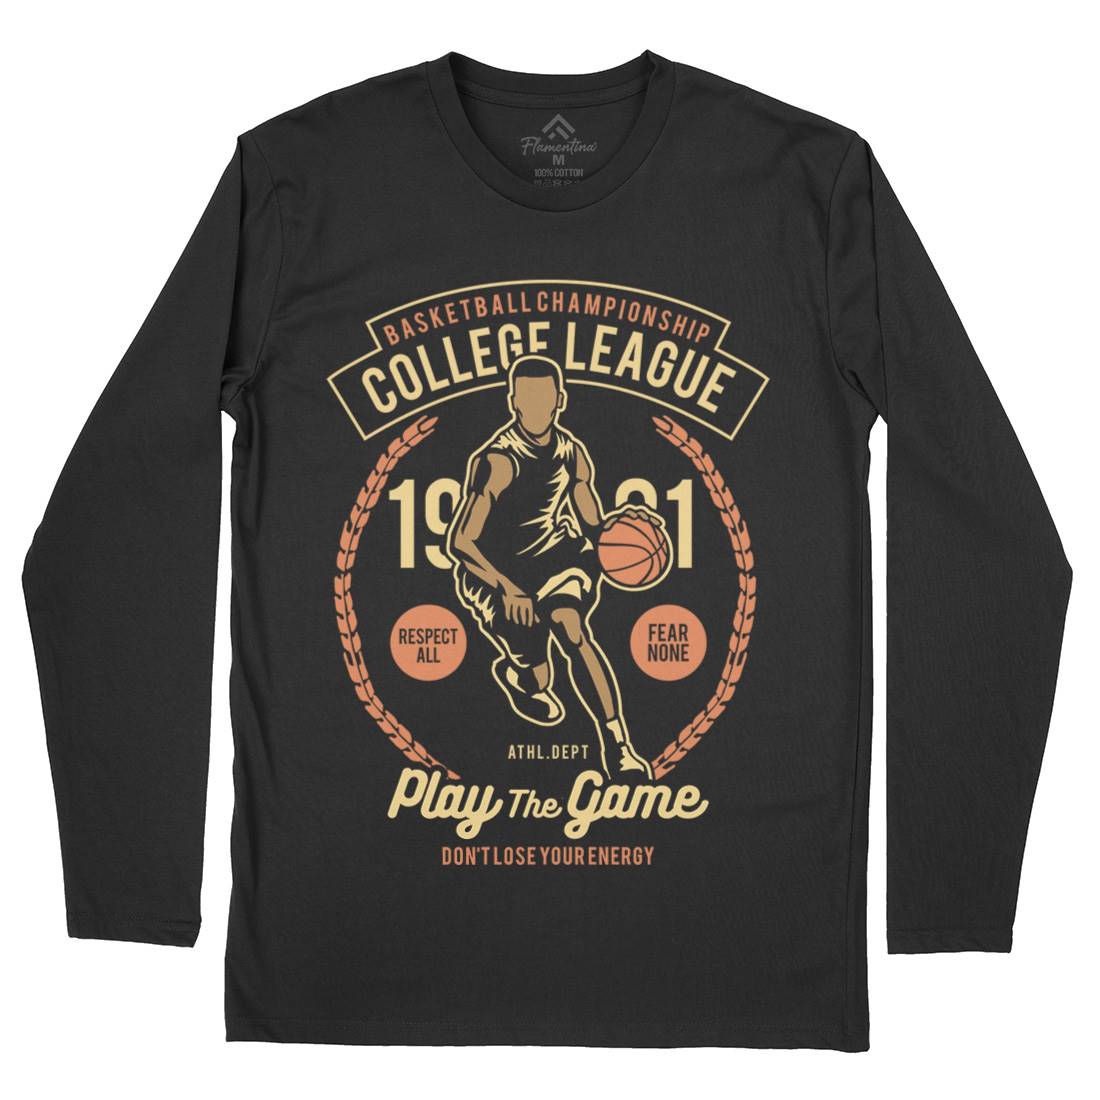 College League Mens Long Sleeve T-Shirt Sport B197